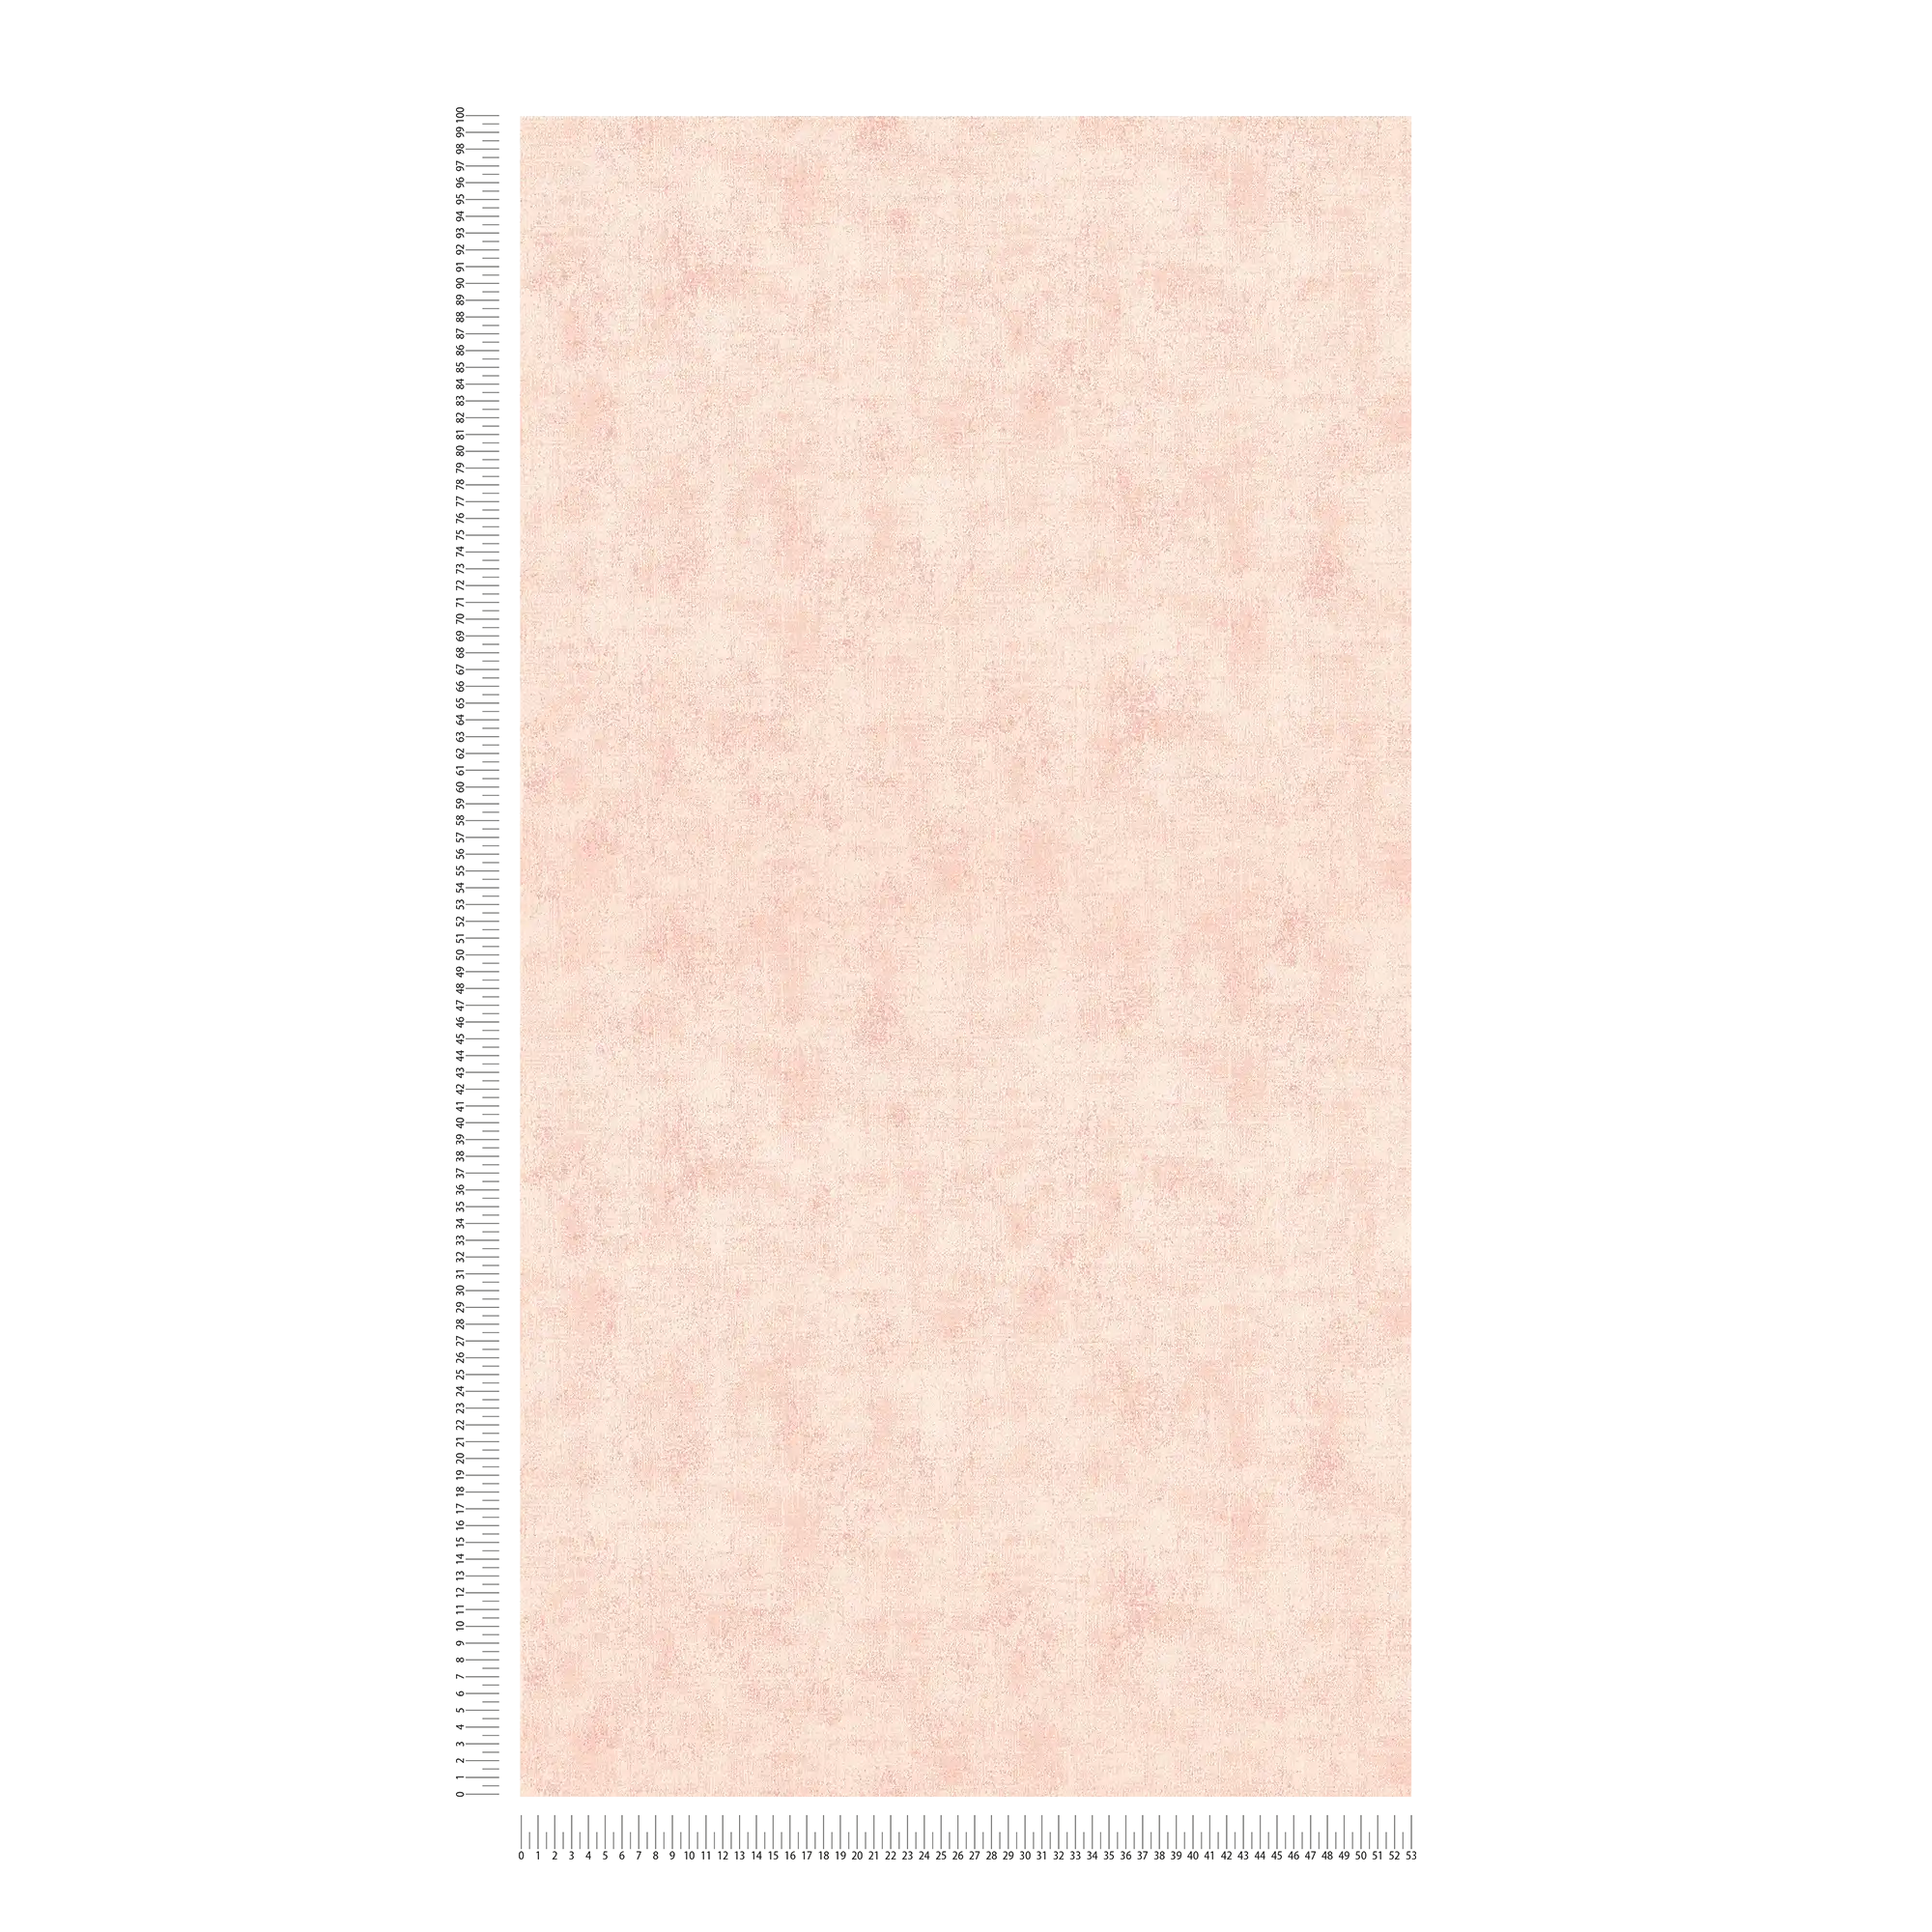             Papel pintado liso con una sutil textura - rosa
        